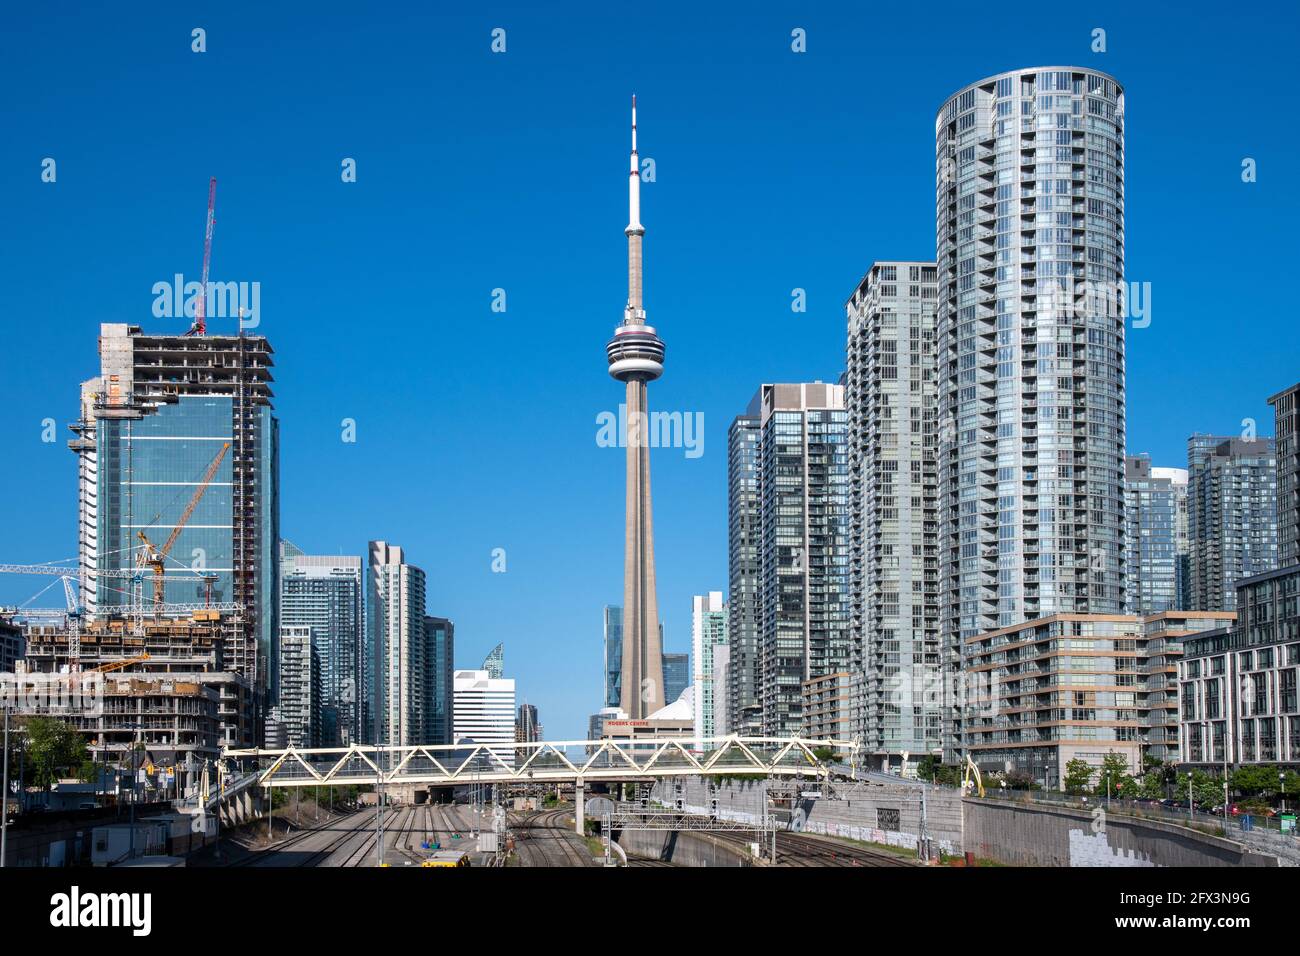 Paisaje urbano de Toronto que muestra el Puente de la Luz (puente peatonal en amarillo) en el distrito del centro, Canadá. Esta área se está redesarrollando y es un punto a la par Foto de stock